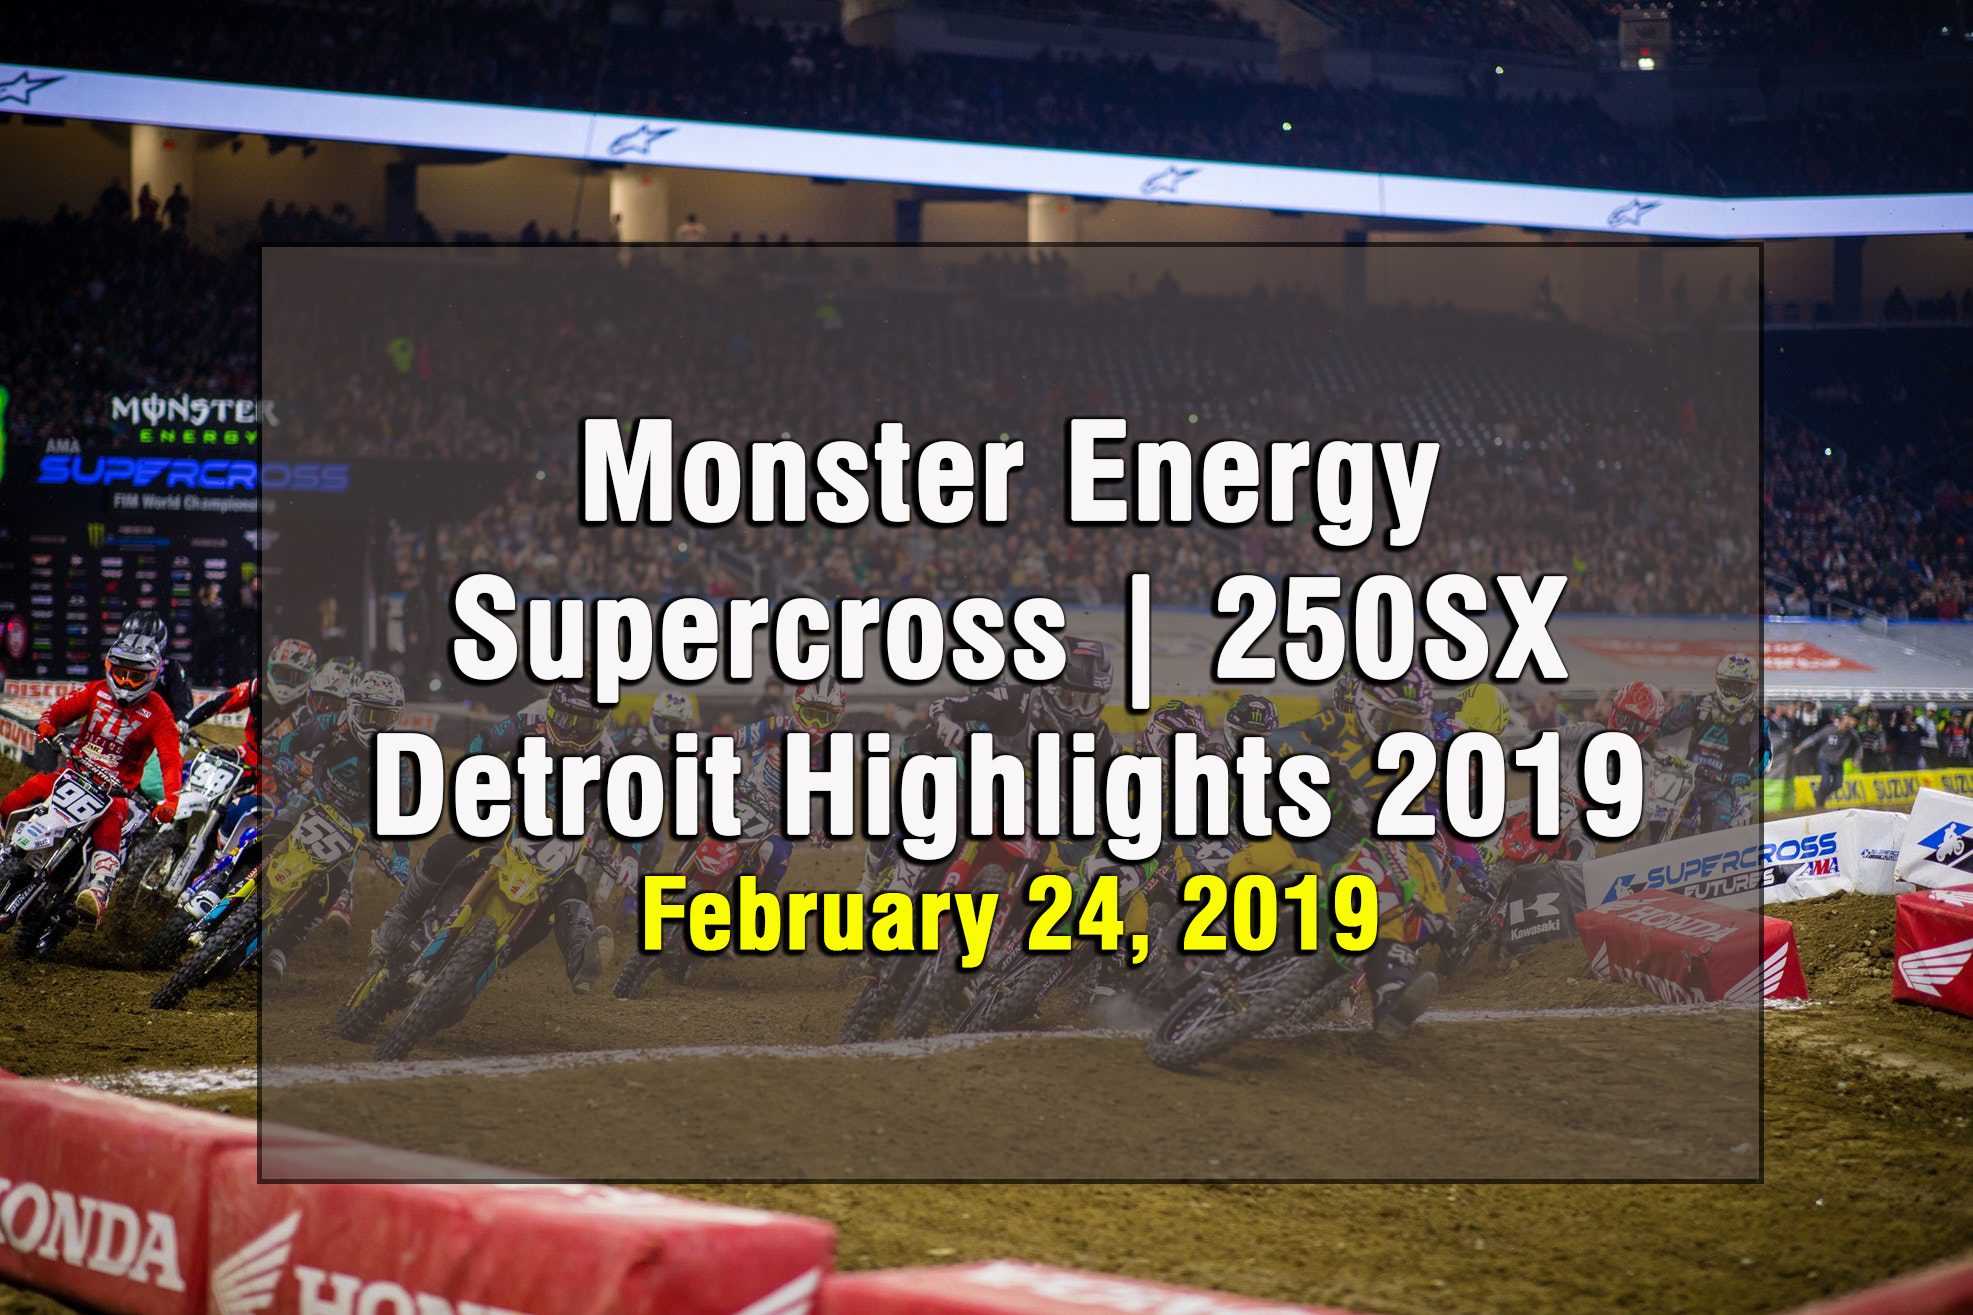 Monster Energy Supercross 250SX Detroit Highlights 2019